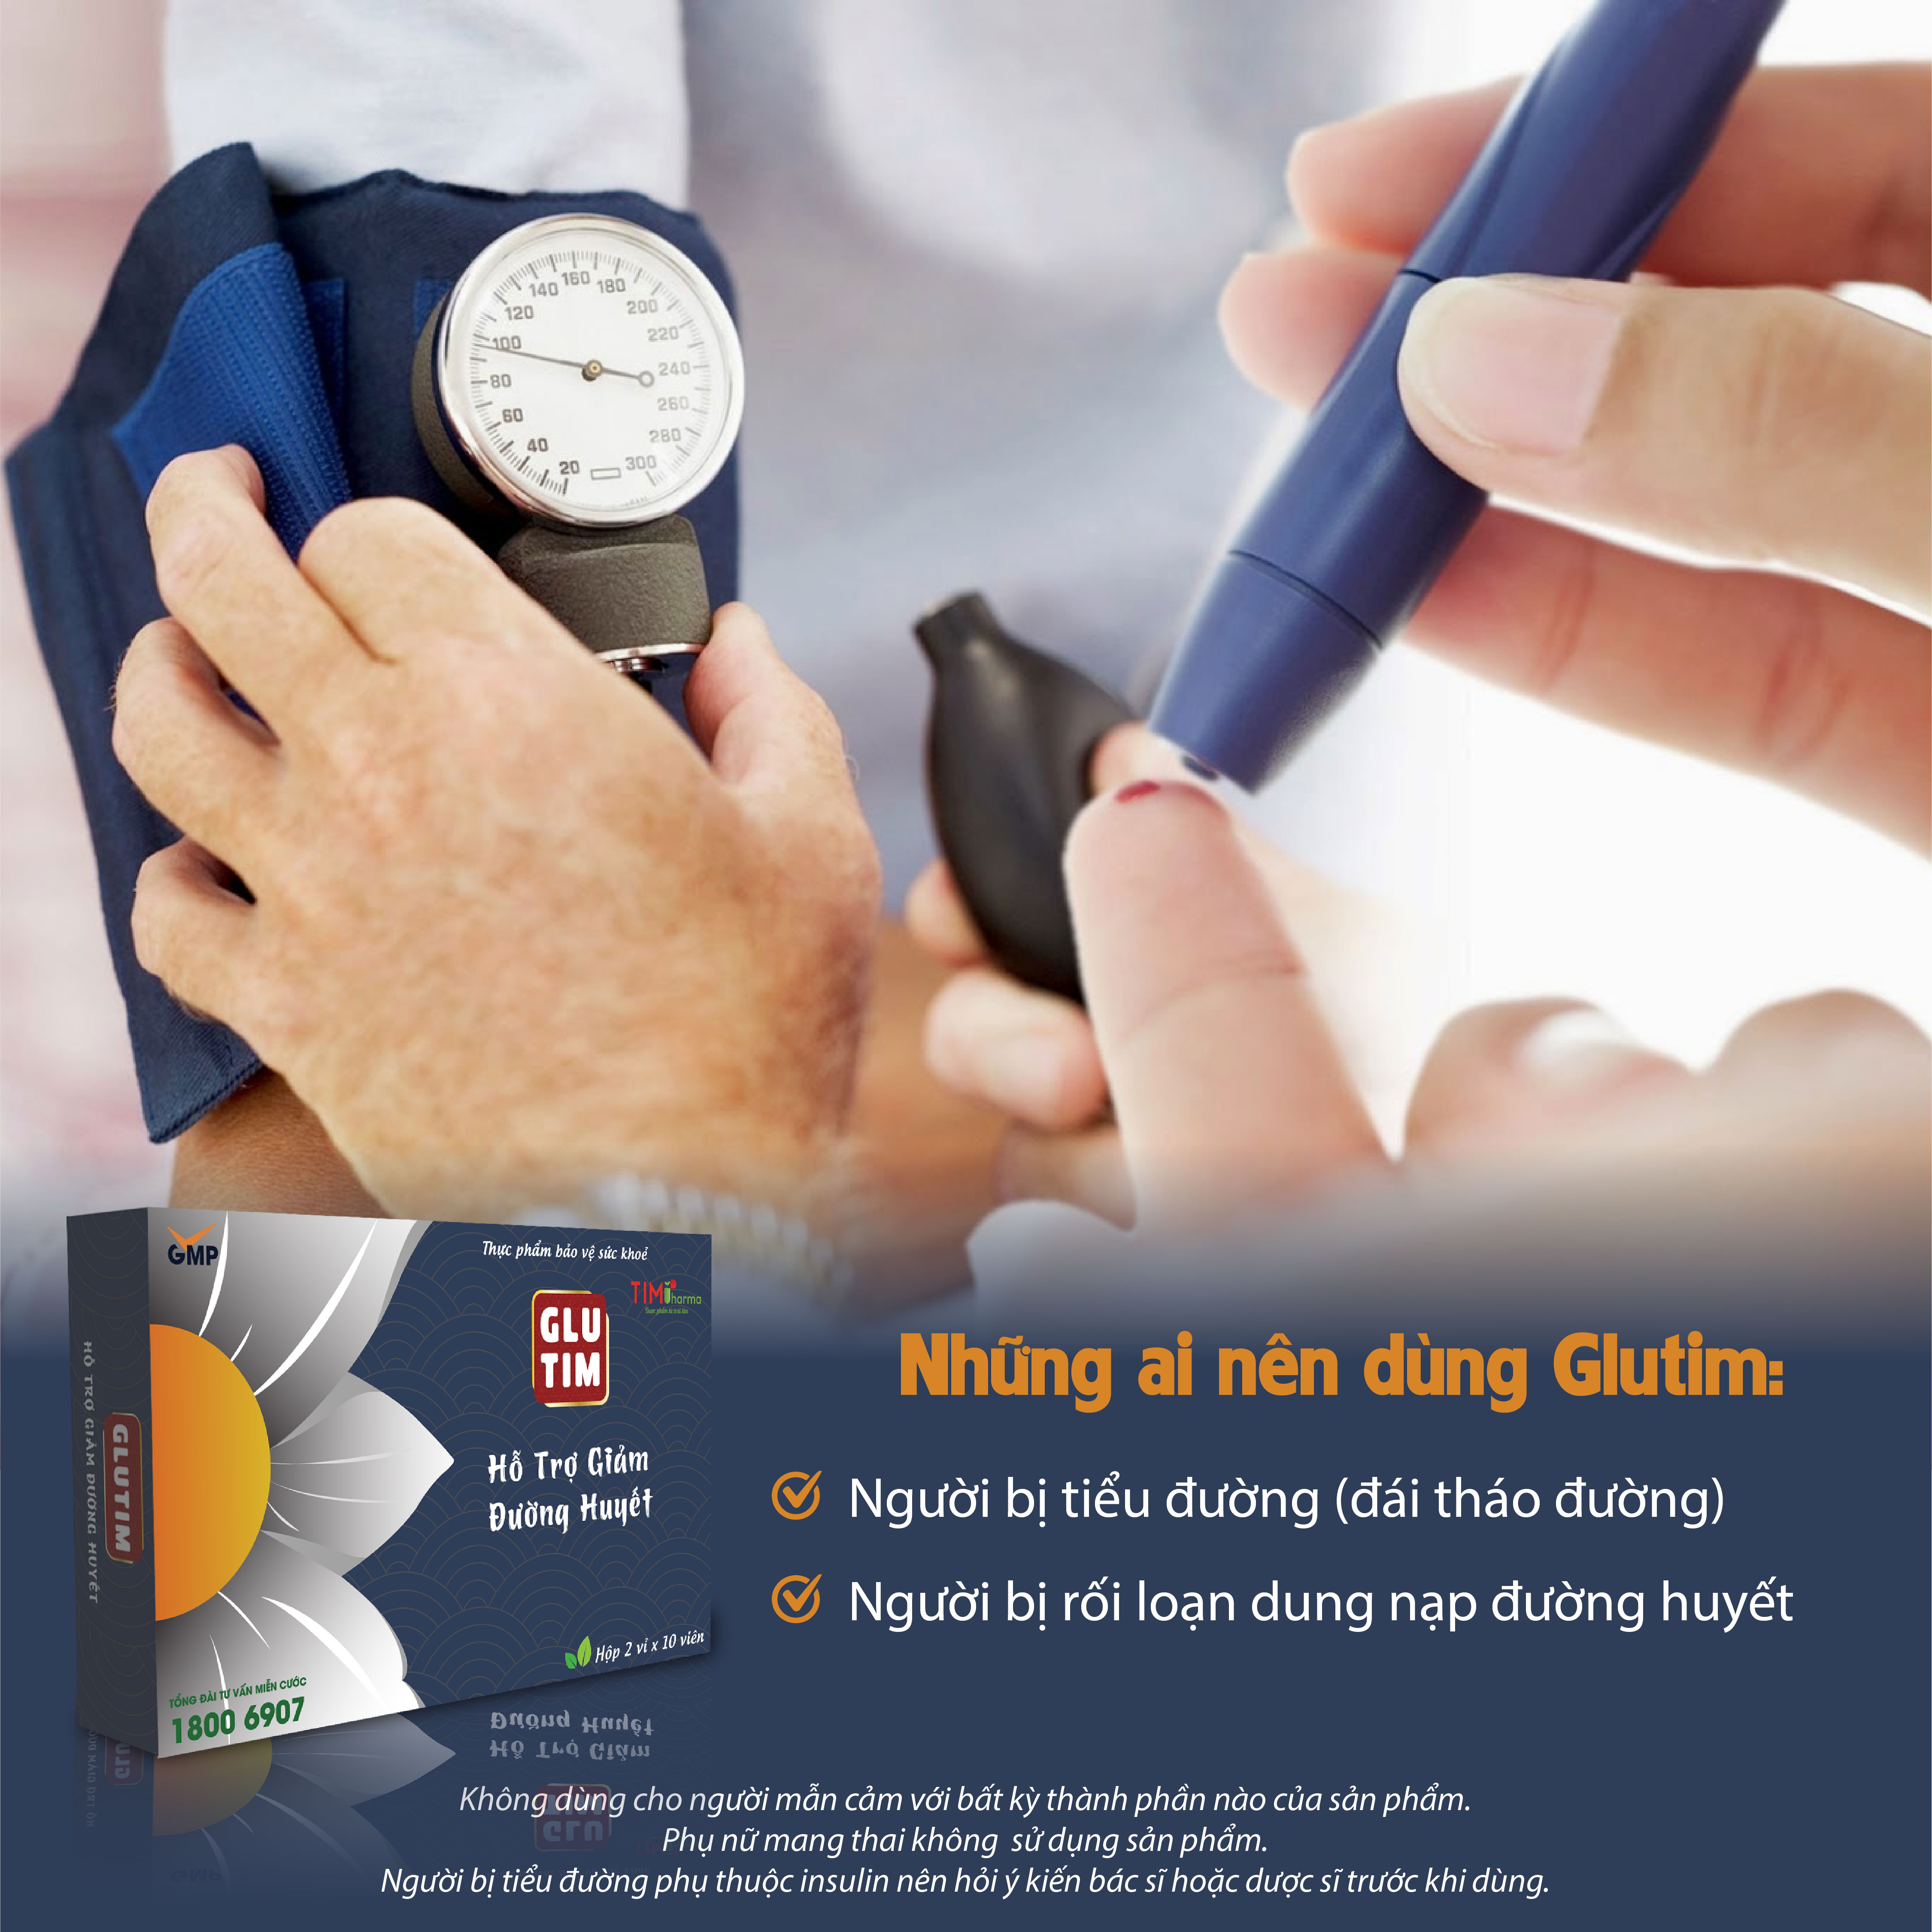 TPBVSK GLUTIM – Hỗ trợ giảm đường huyết, hỗ trợ giảm nguy cơ biến chứng do đái tháo đường